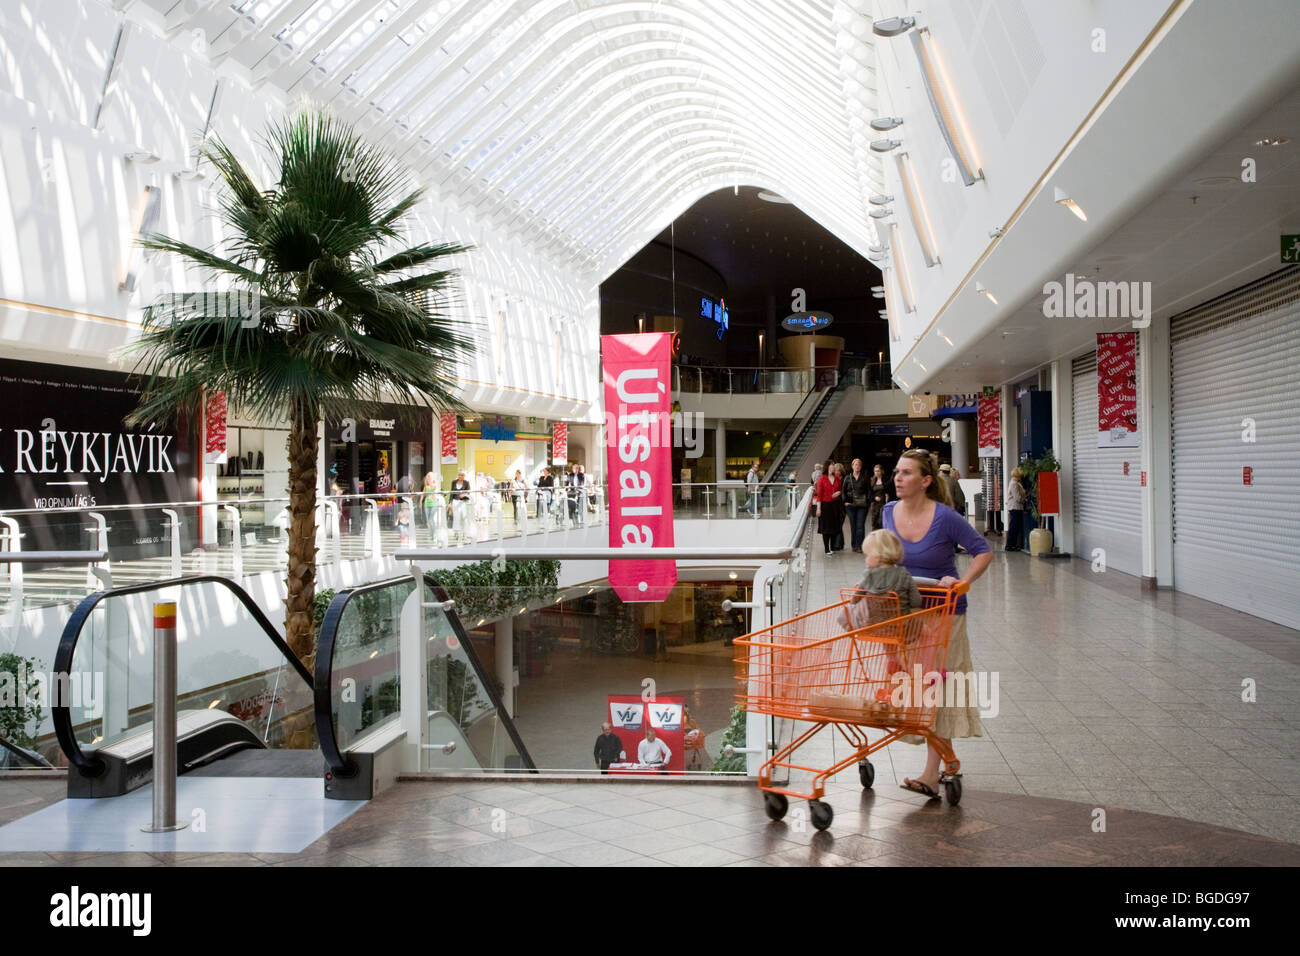 Les gens shopping pendant une vente en centre commercial Smaralind mall. Kopavogur, Islande. Banque D'Images